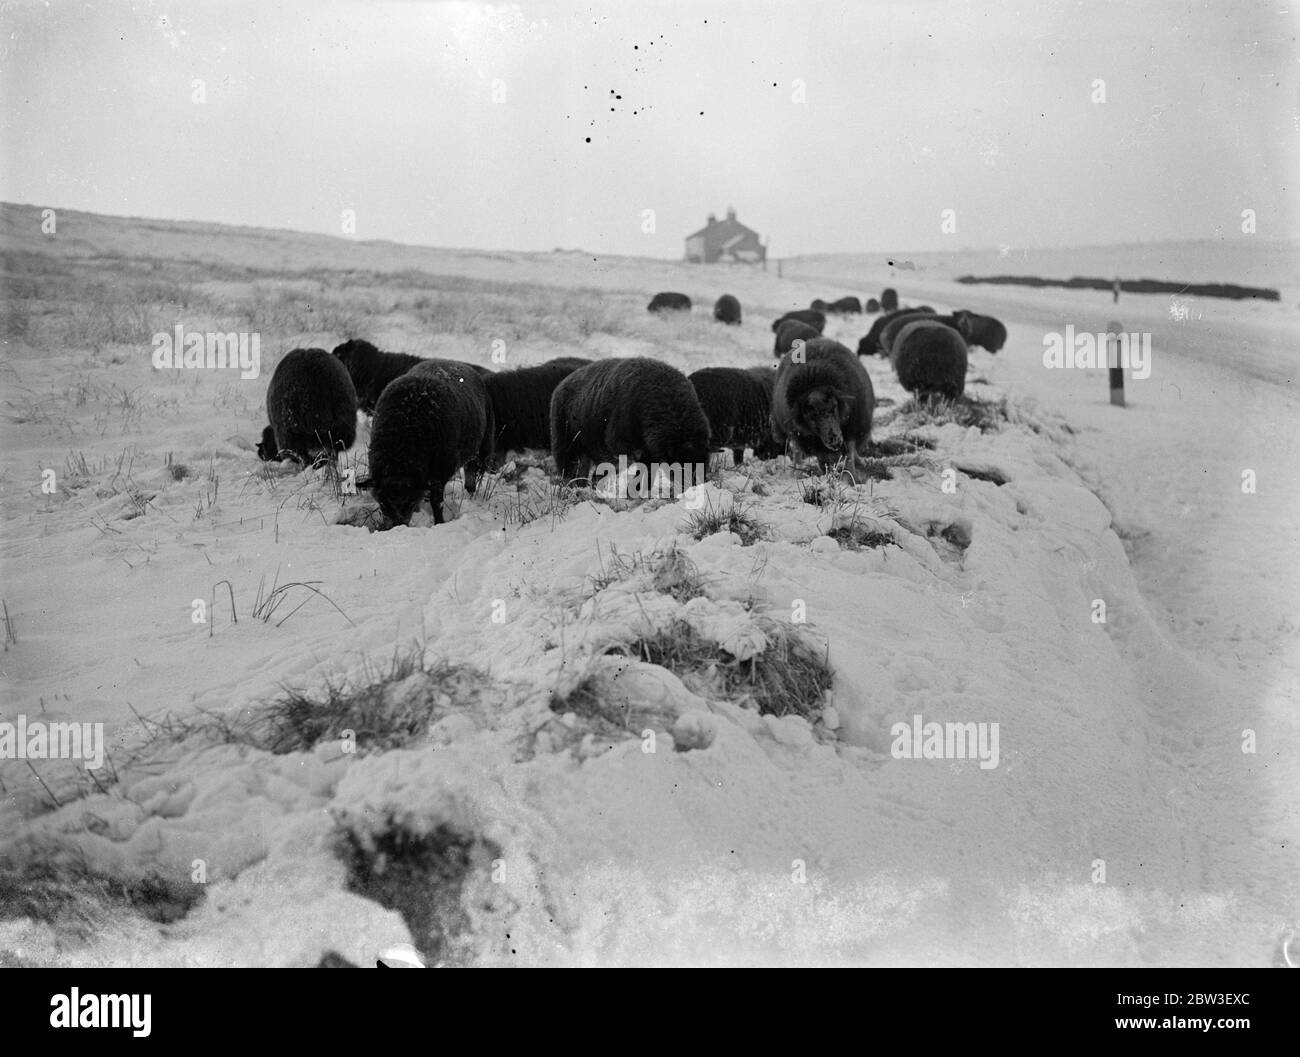 Schafe im Schnee bei Buxton . Cheshire und Derbyshire scheinen von einem weißen weihnachten versichert. Schnee ist gefallen, die Moore zu einer Tiefe von mehreren Zoll bedeckt. Foto zeigt, Schafe auf der Suche nach Nahrung auf den Mooren in der Nähe von Buxton, Derbyshire. 21 Dezember 1935 Stockfoto